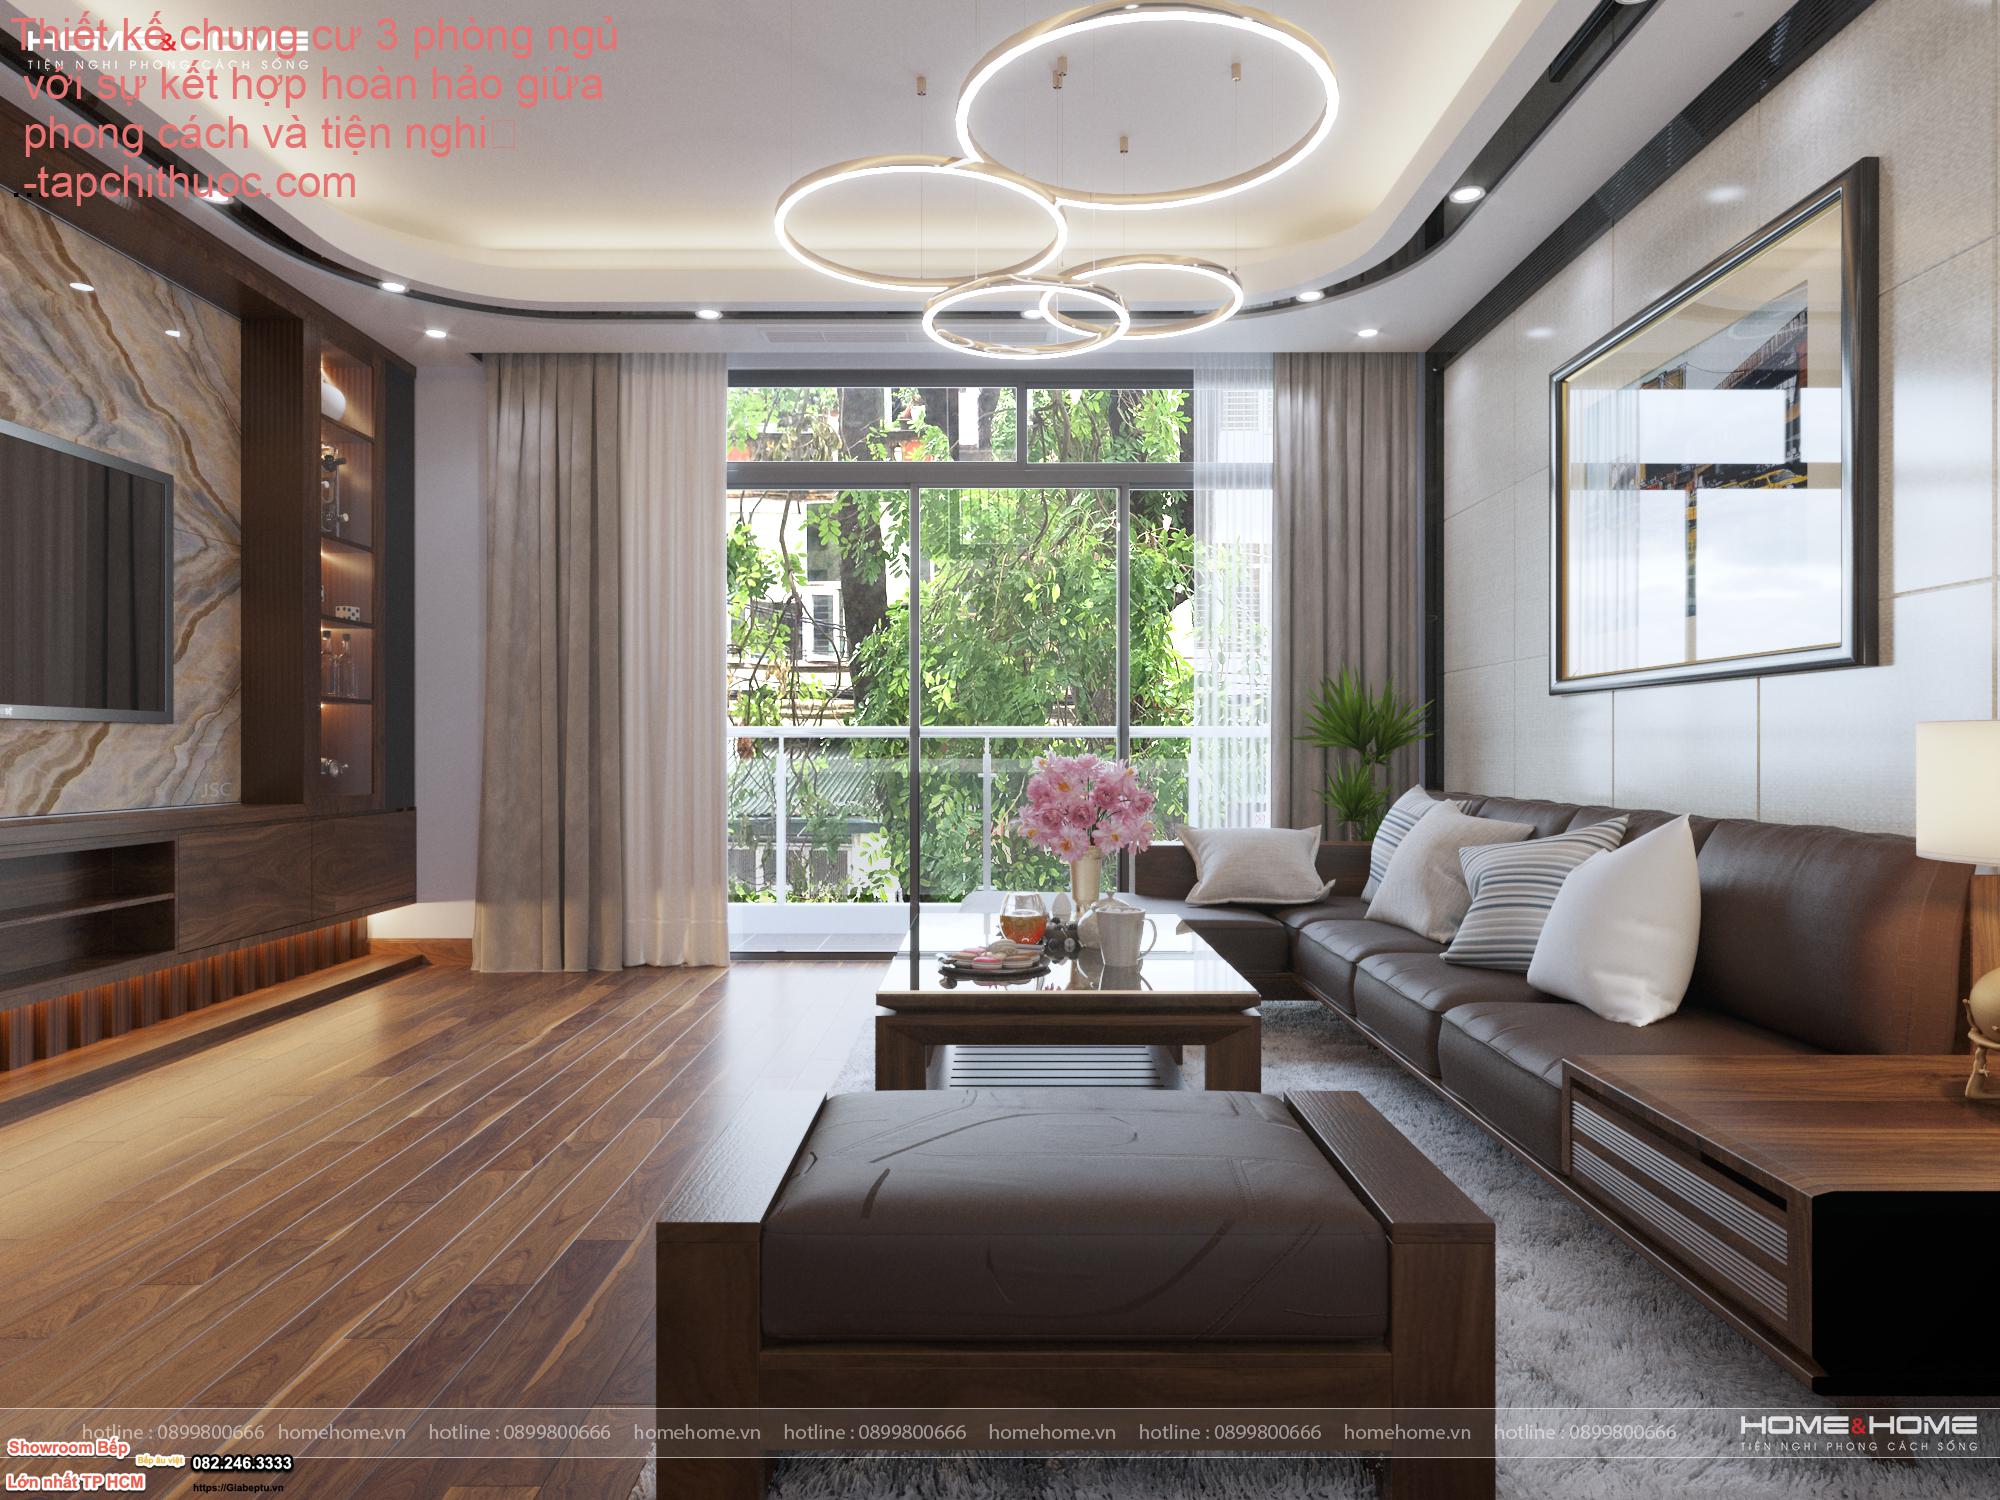 Thiết kế chung cư 3 phòng ngủ với sự kết hợp hoàn hảo giữa phong cách và tiện nghi
